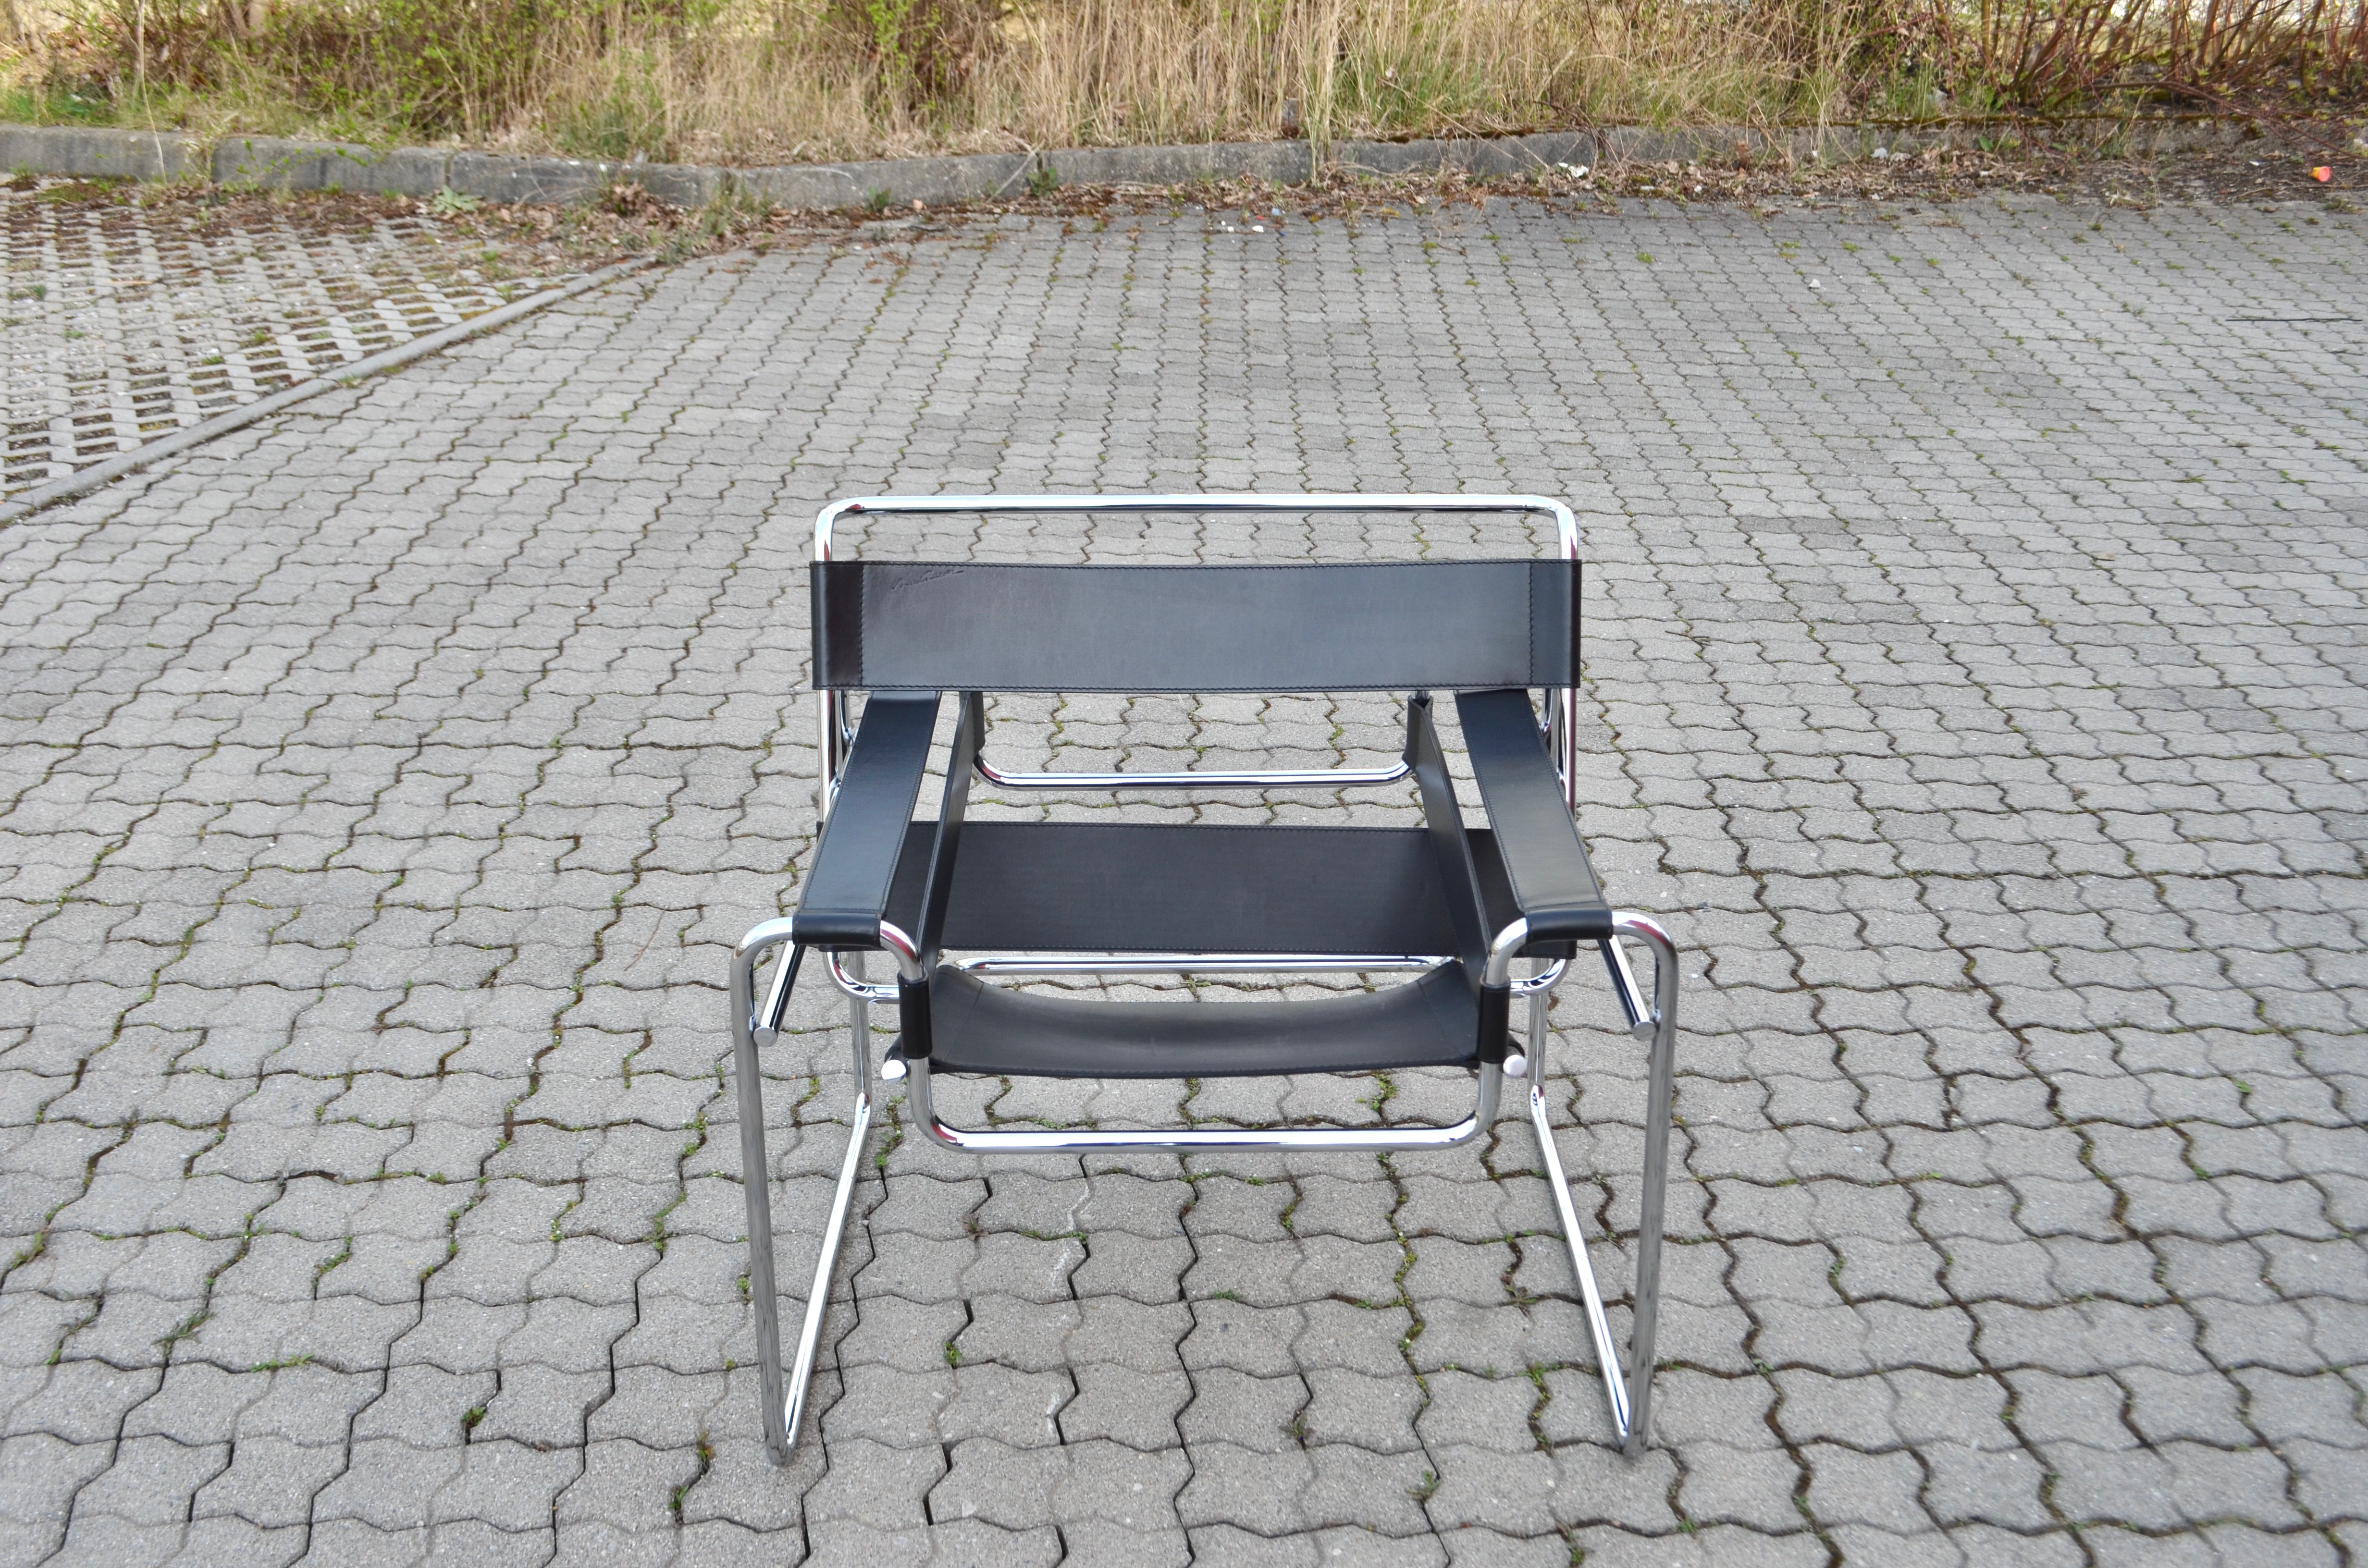 Cette chaise Wassily, en acier tubulaire chromé et cuir noir, a été conçue par Marcel Breuer et produite par Knoll International.
Production de Knoll International avec le cachet de Marcel Breuer.
Cadre en chrome en très bon état.
De même, le cuir